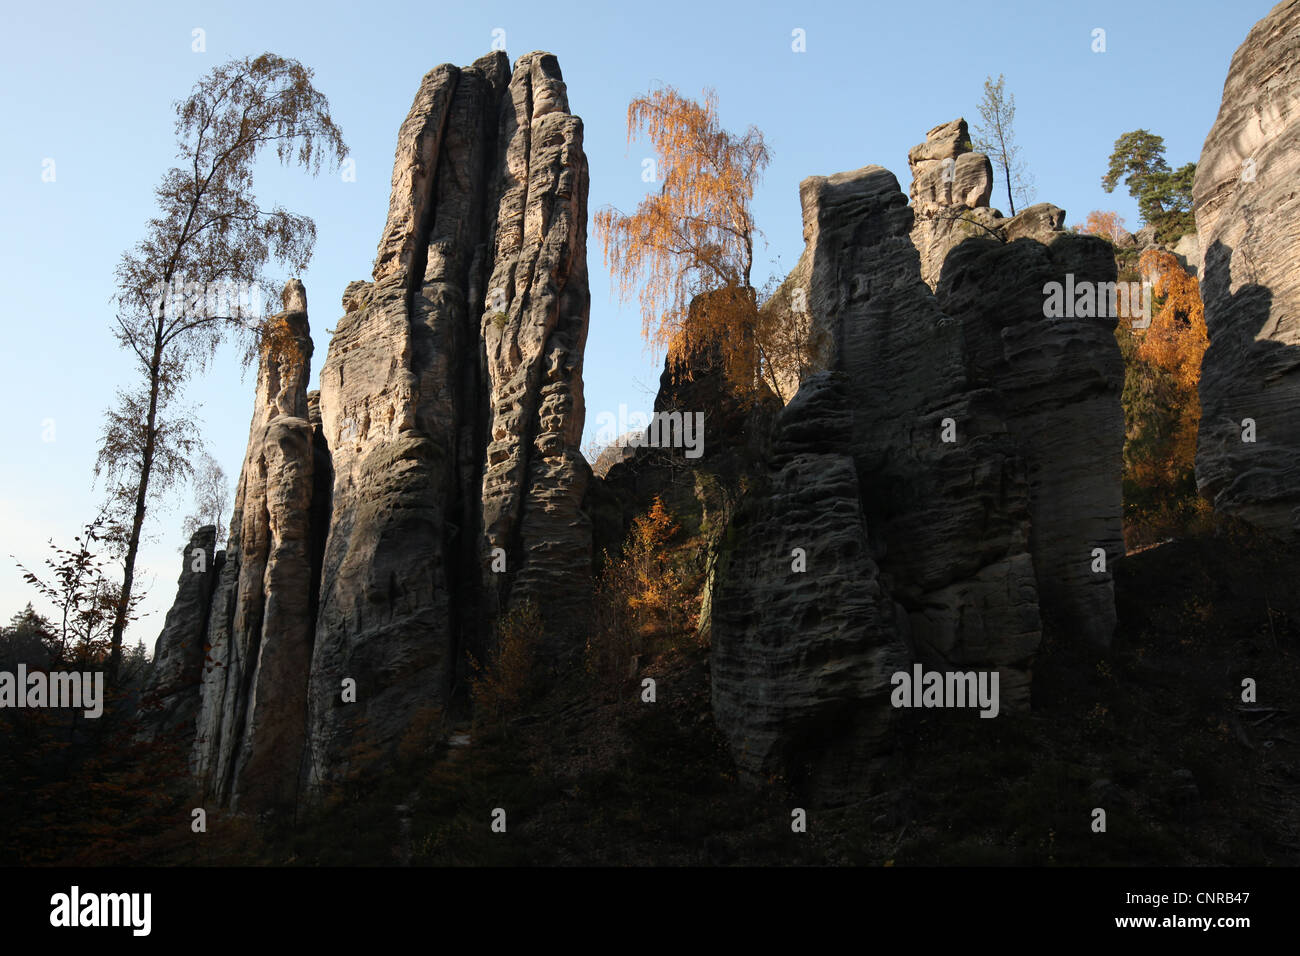 Prachover Felsen in das Landschaftsschutzgebiet Böhmisches Paradies in Mittelböhmen, Tschechien. Stockfoto